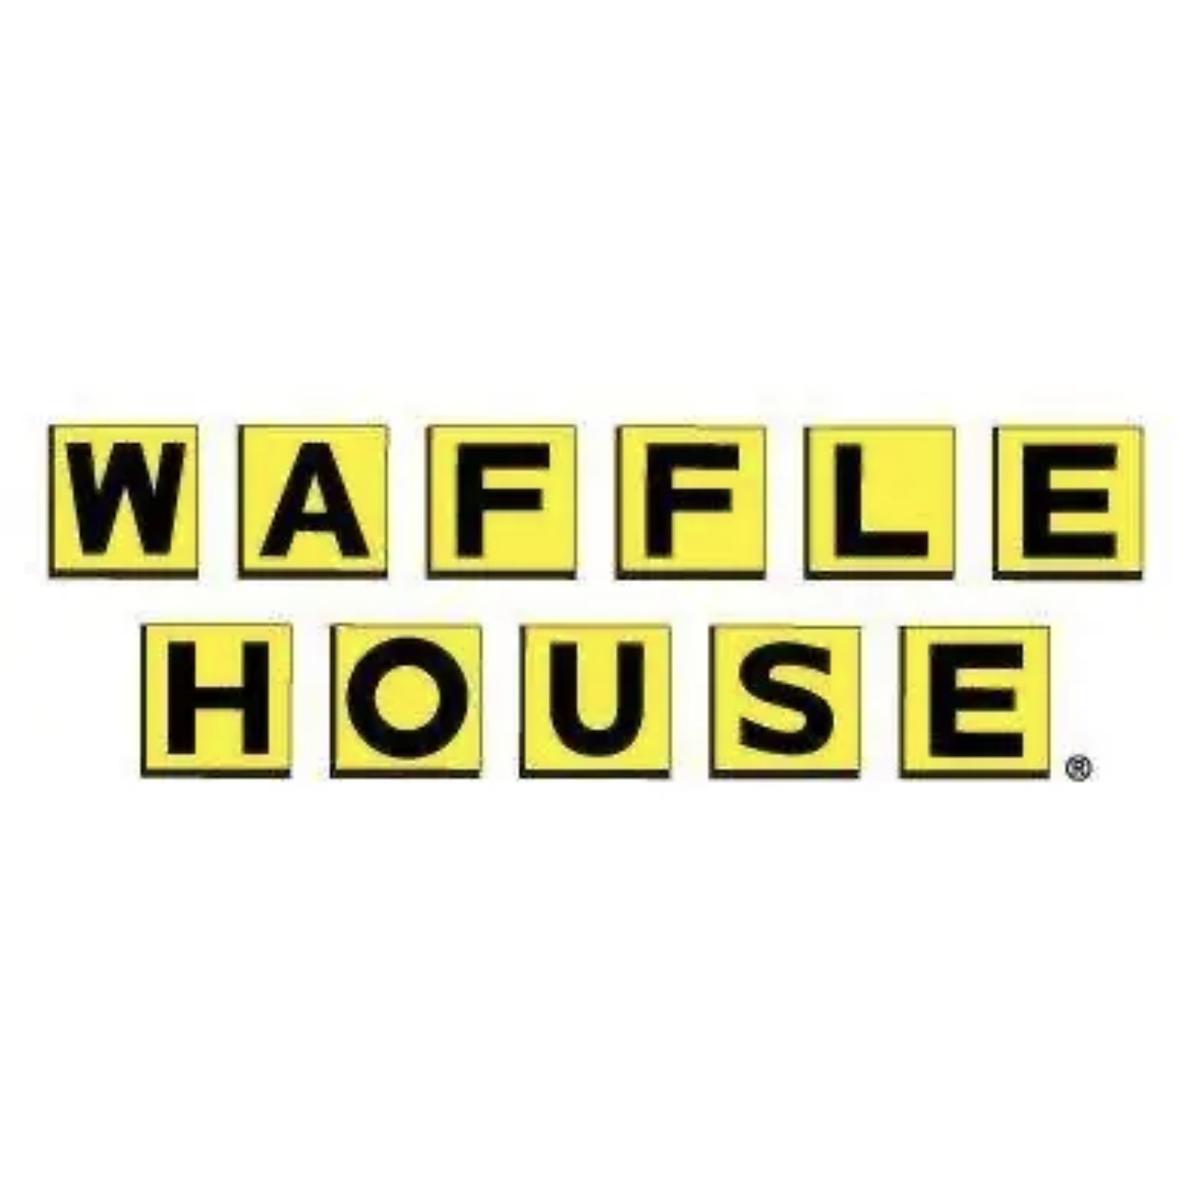 Waffle House's images